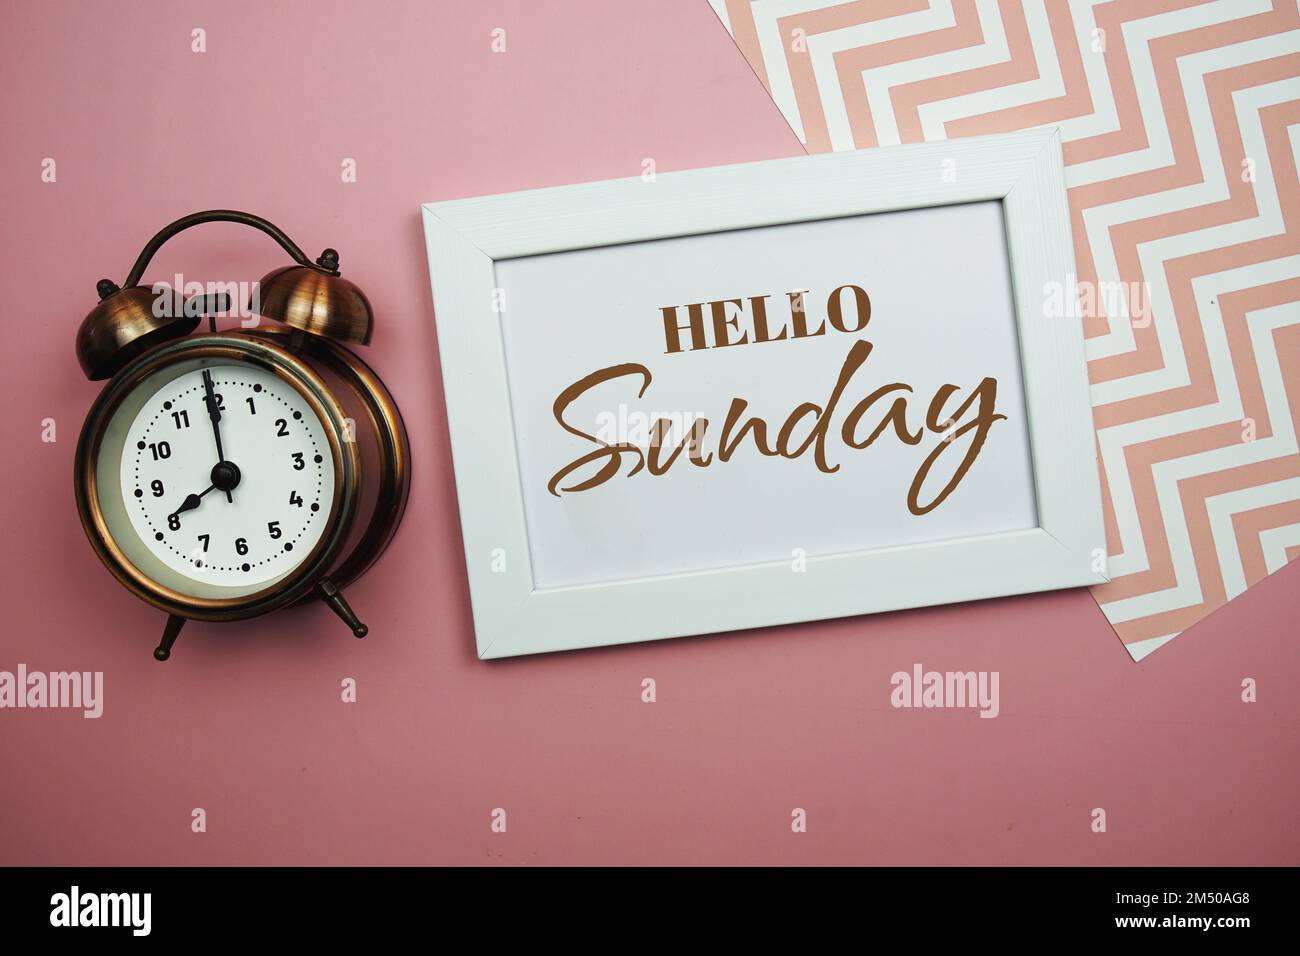 Bonjour dimanche et réveil sur fond rose Photo Stock - Alamy